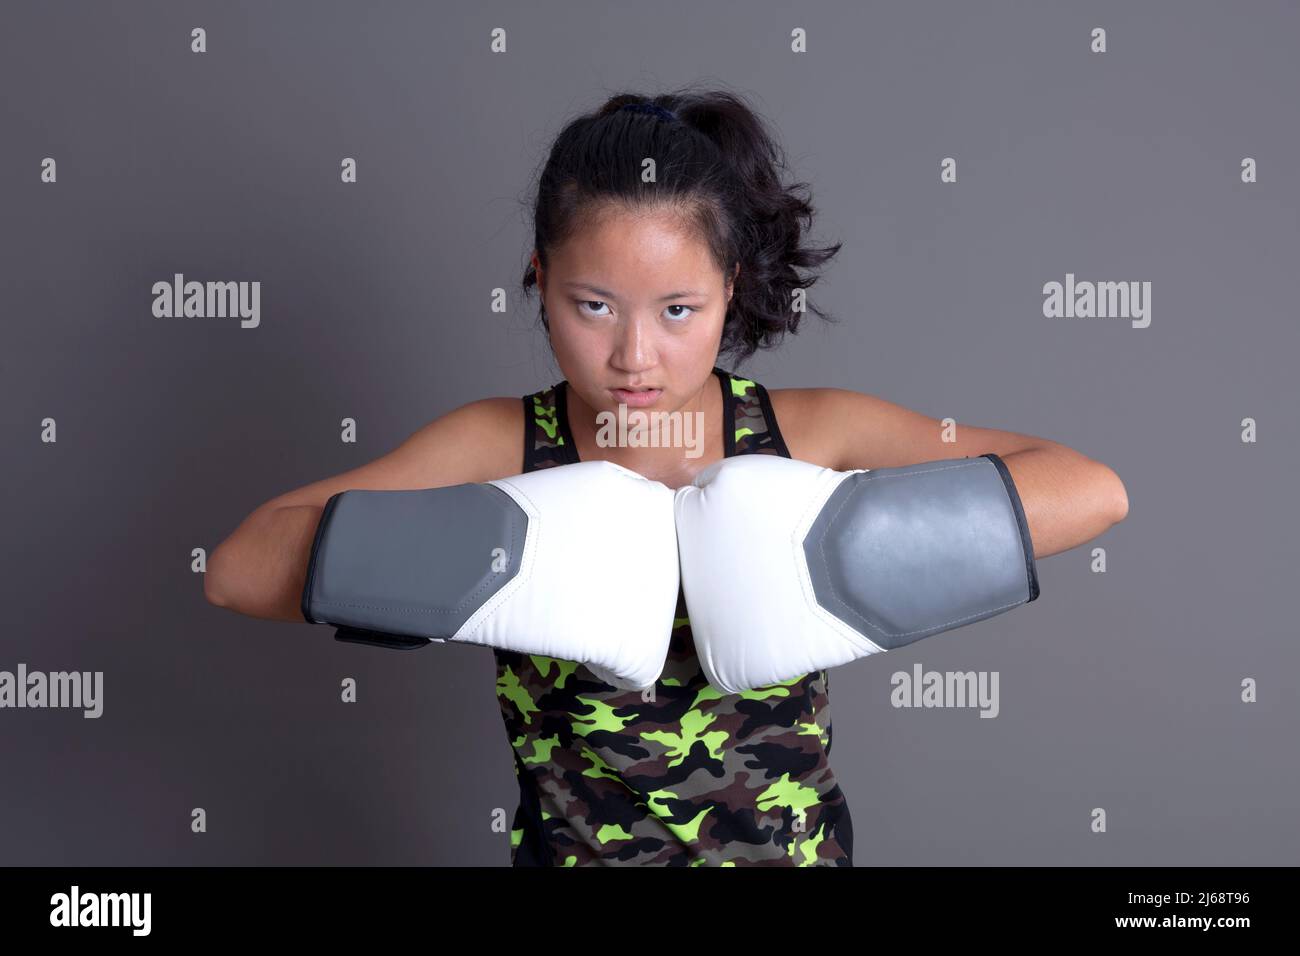 sportif asiatique ethnicité avec gants de boxe Banque D'Images